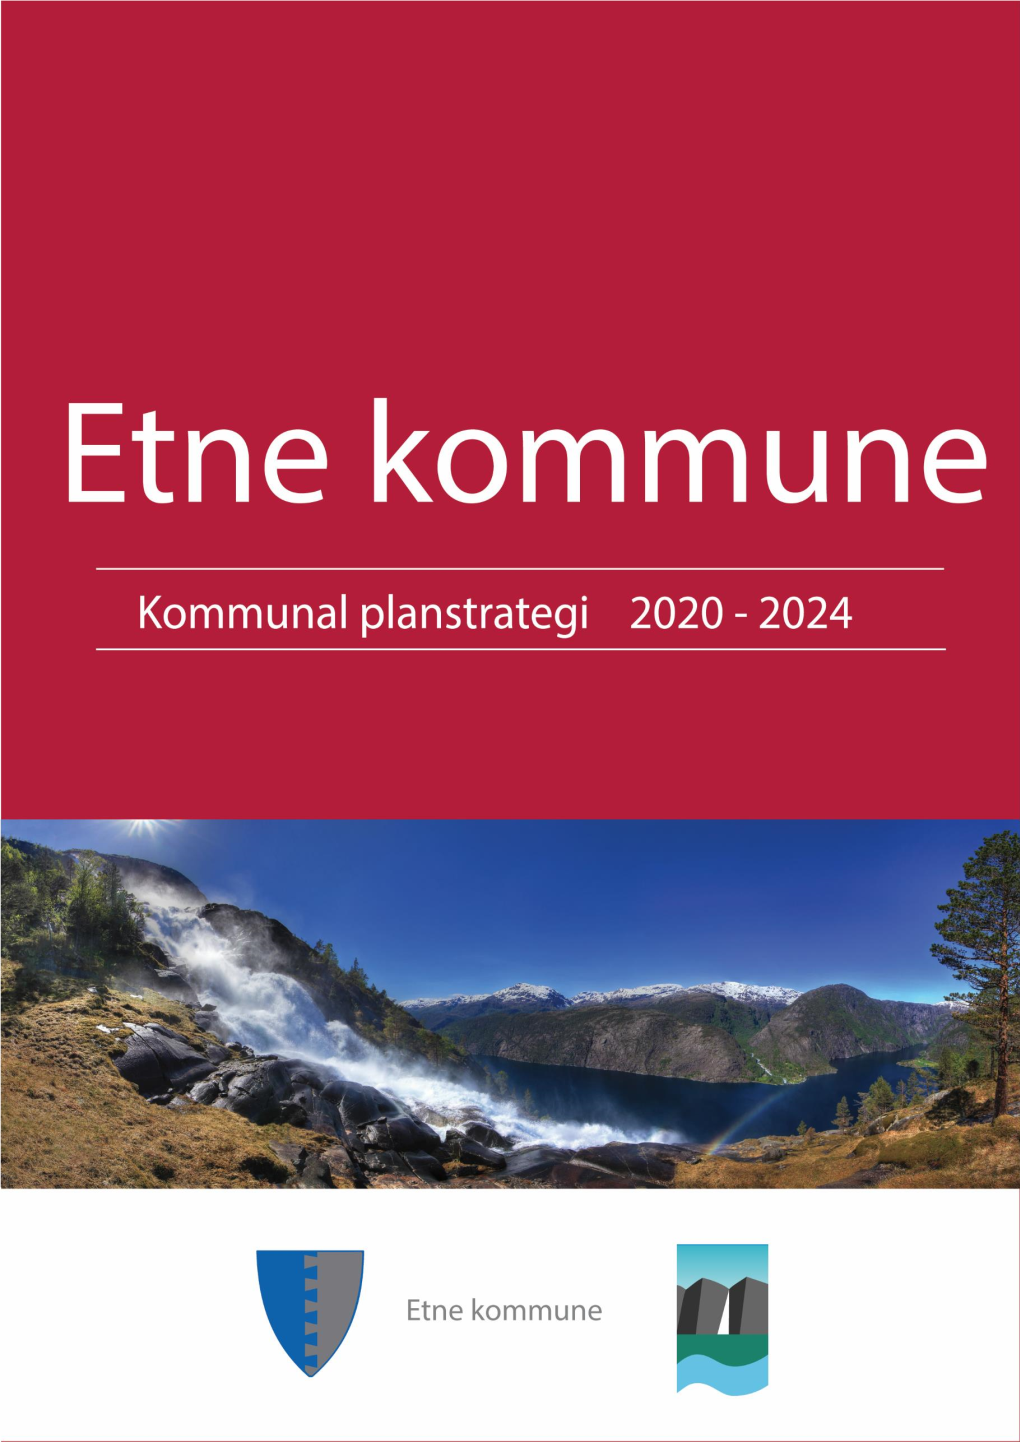 Etne Kommune KOMMUNAL PLANSTRATEGI 2020-2024